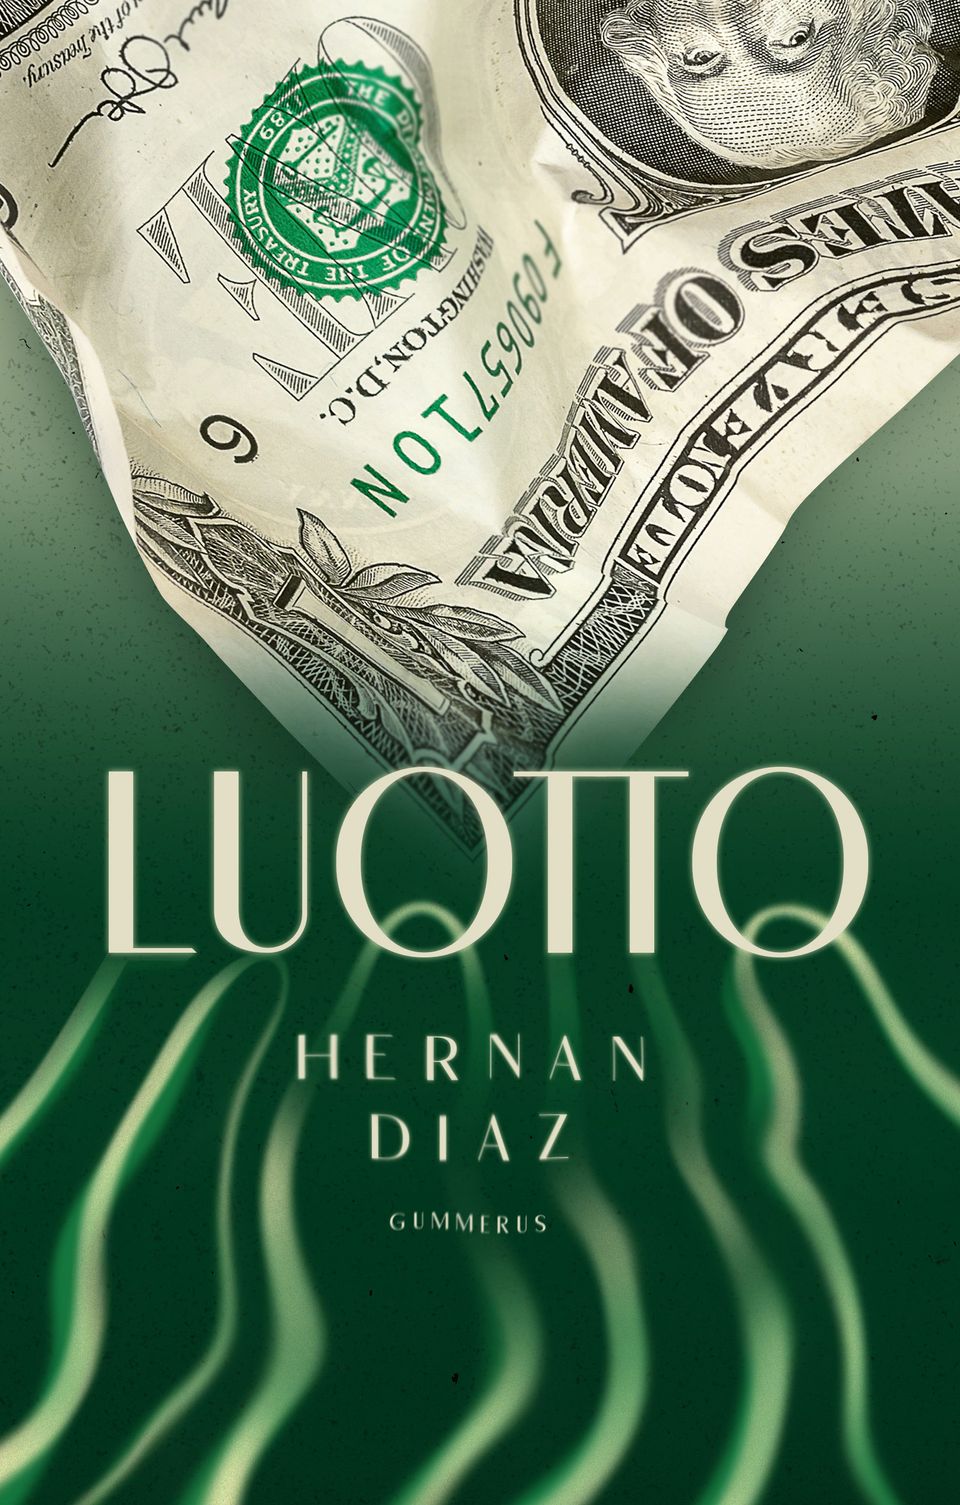 Gummerus julkaisee syyskuussa Hernan Diazin Pulitzer-palkitun romaanin Luotto